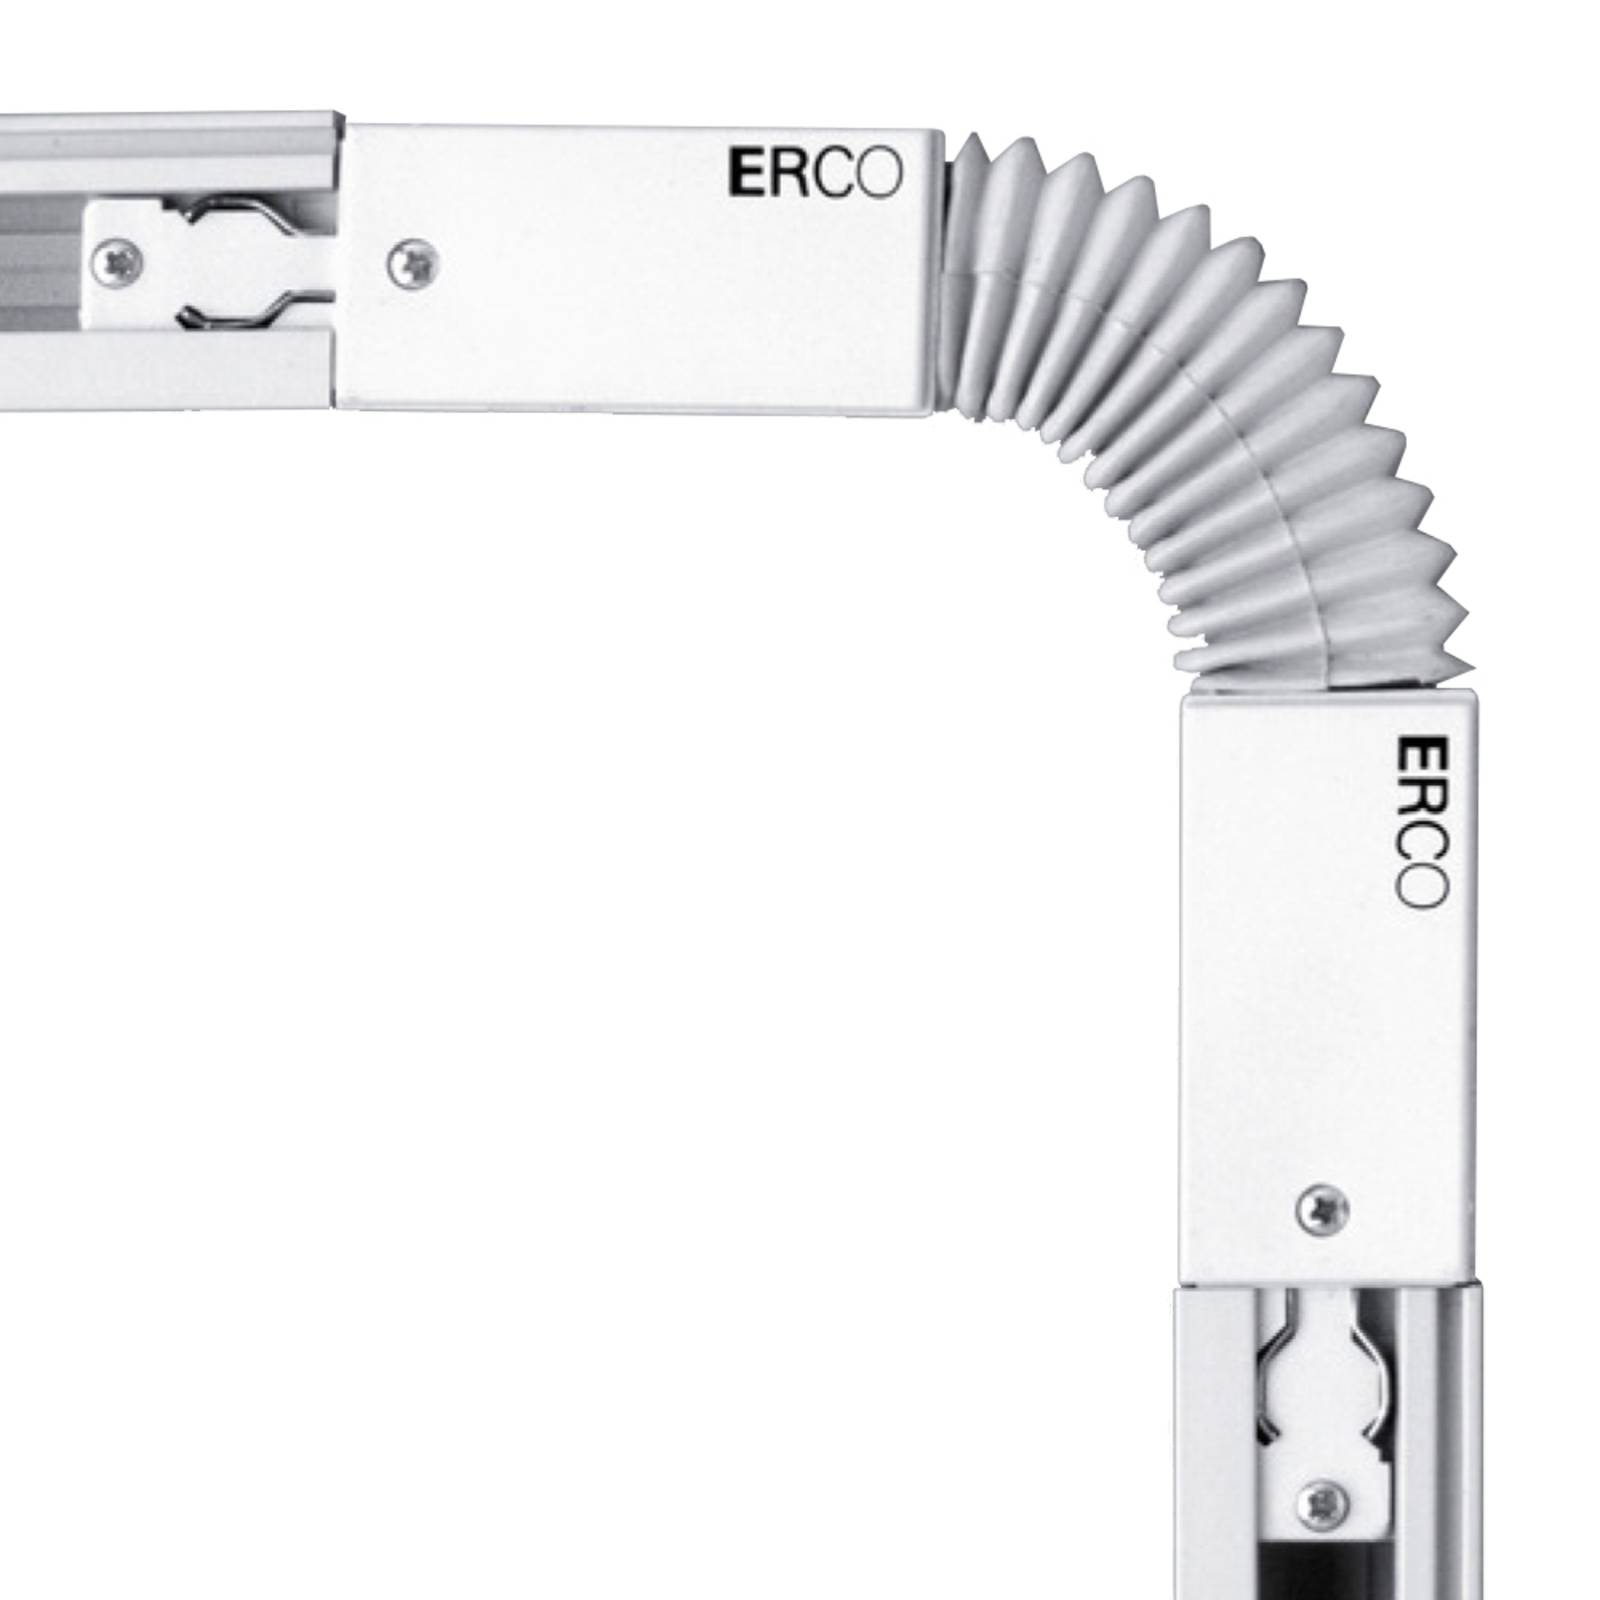 ERCO multiflex-kobling 3-fase skinne hvid